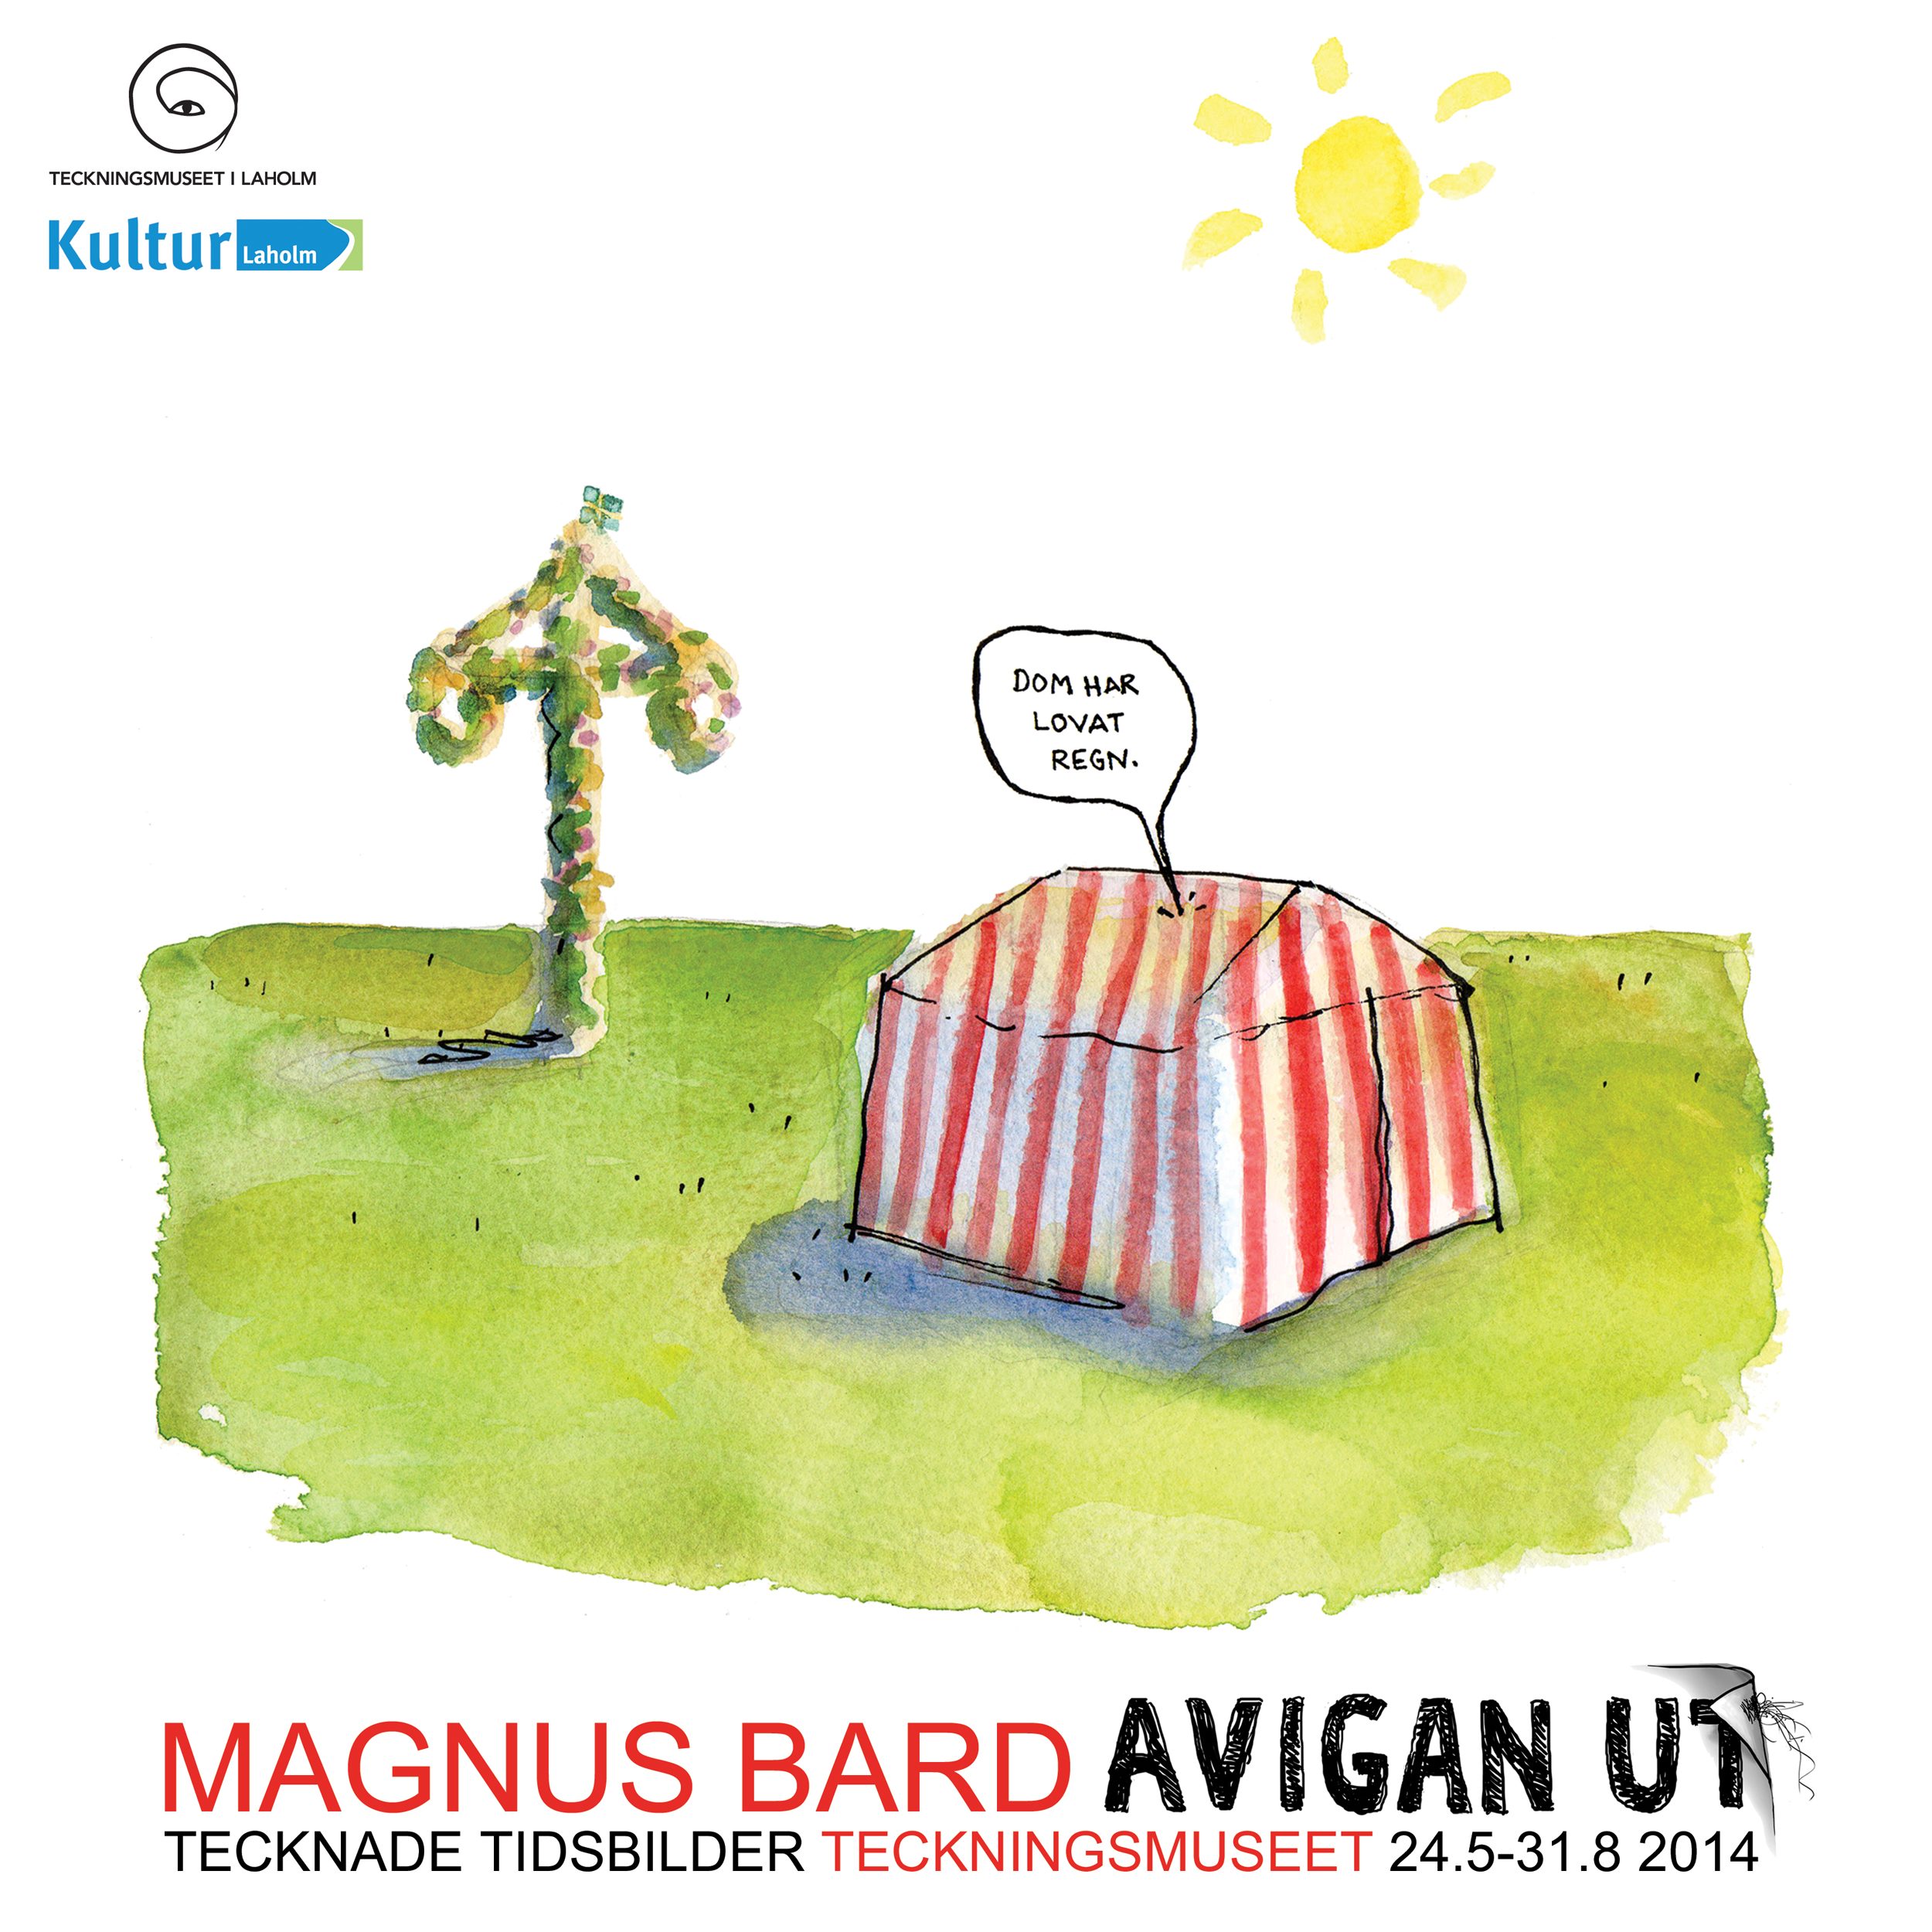 Magnus_Bard_Avigan_ut_Press_kopia.jpg